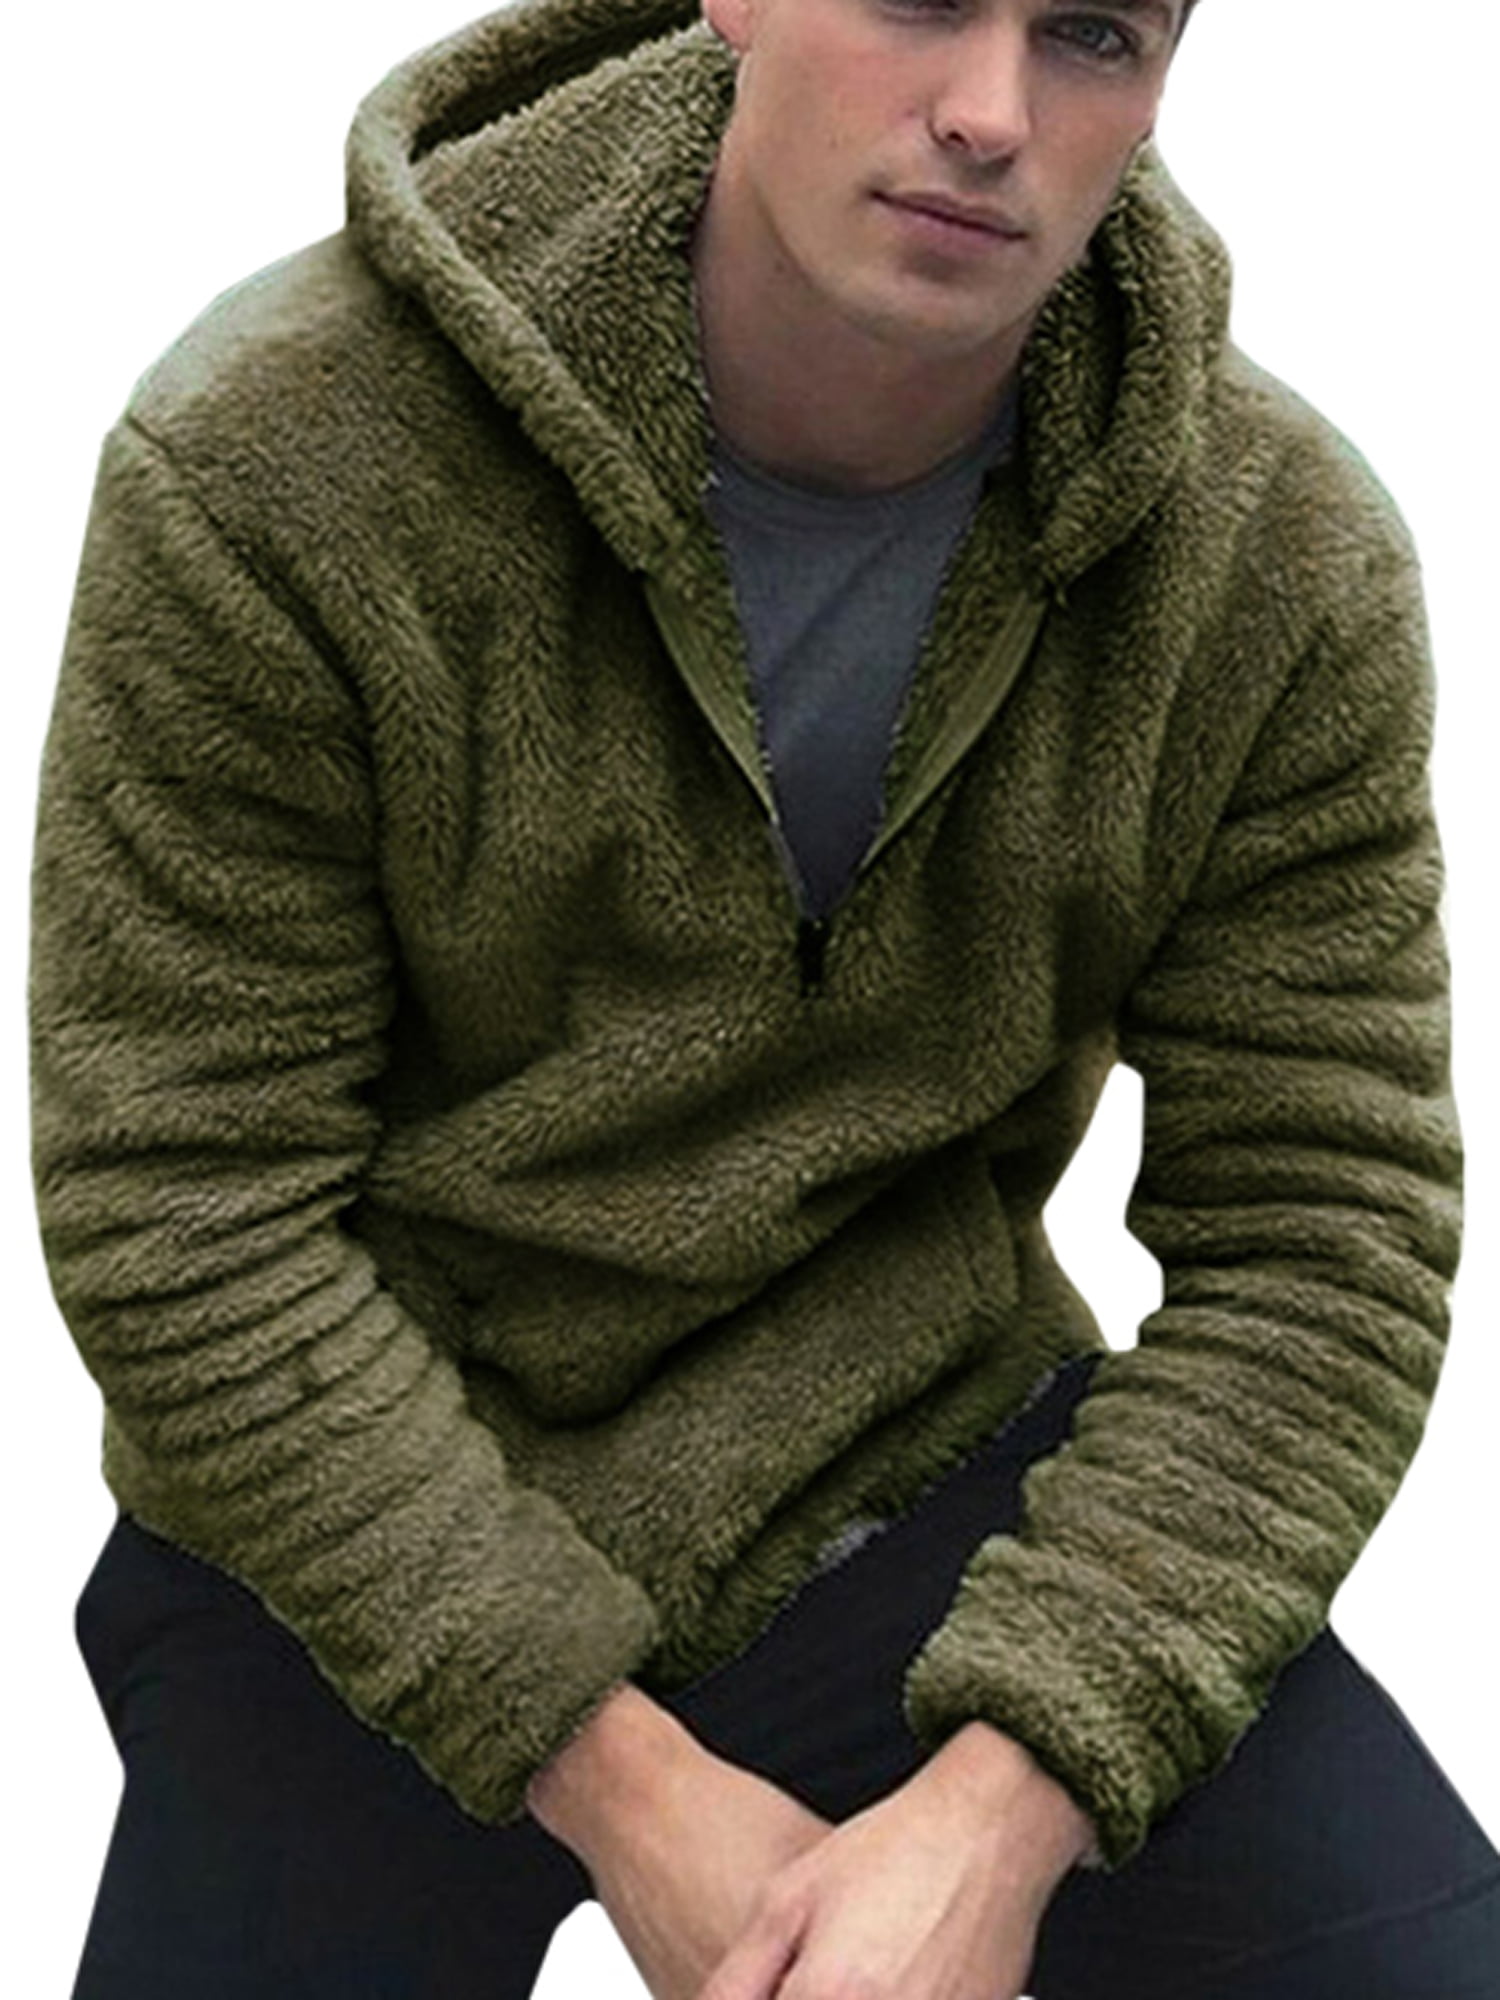 Men's Long Sleeve Fleece Hoody Zipper Jumper Pocket Pullover Sweatshirt Tops New 